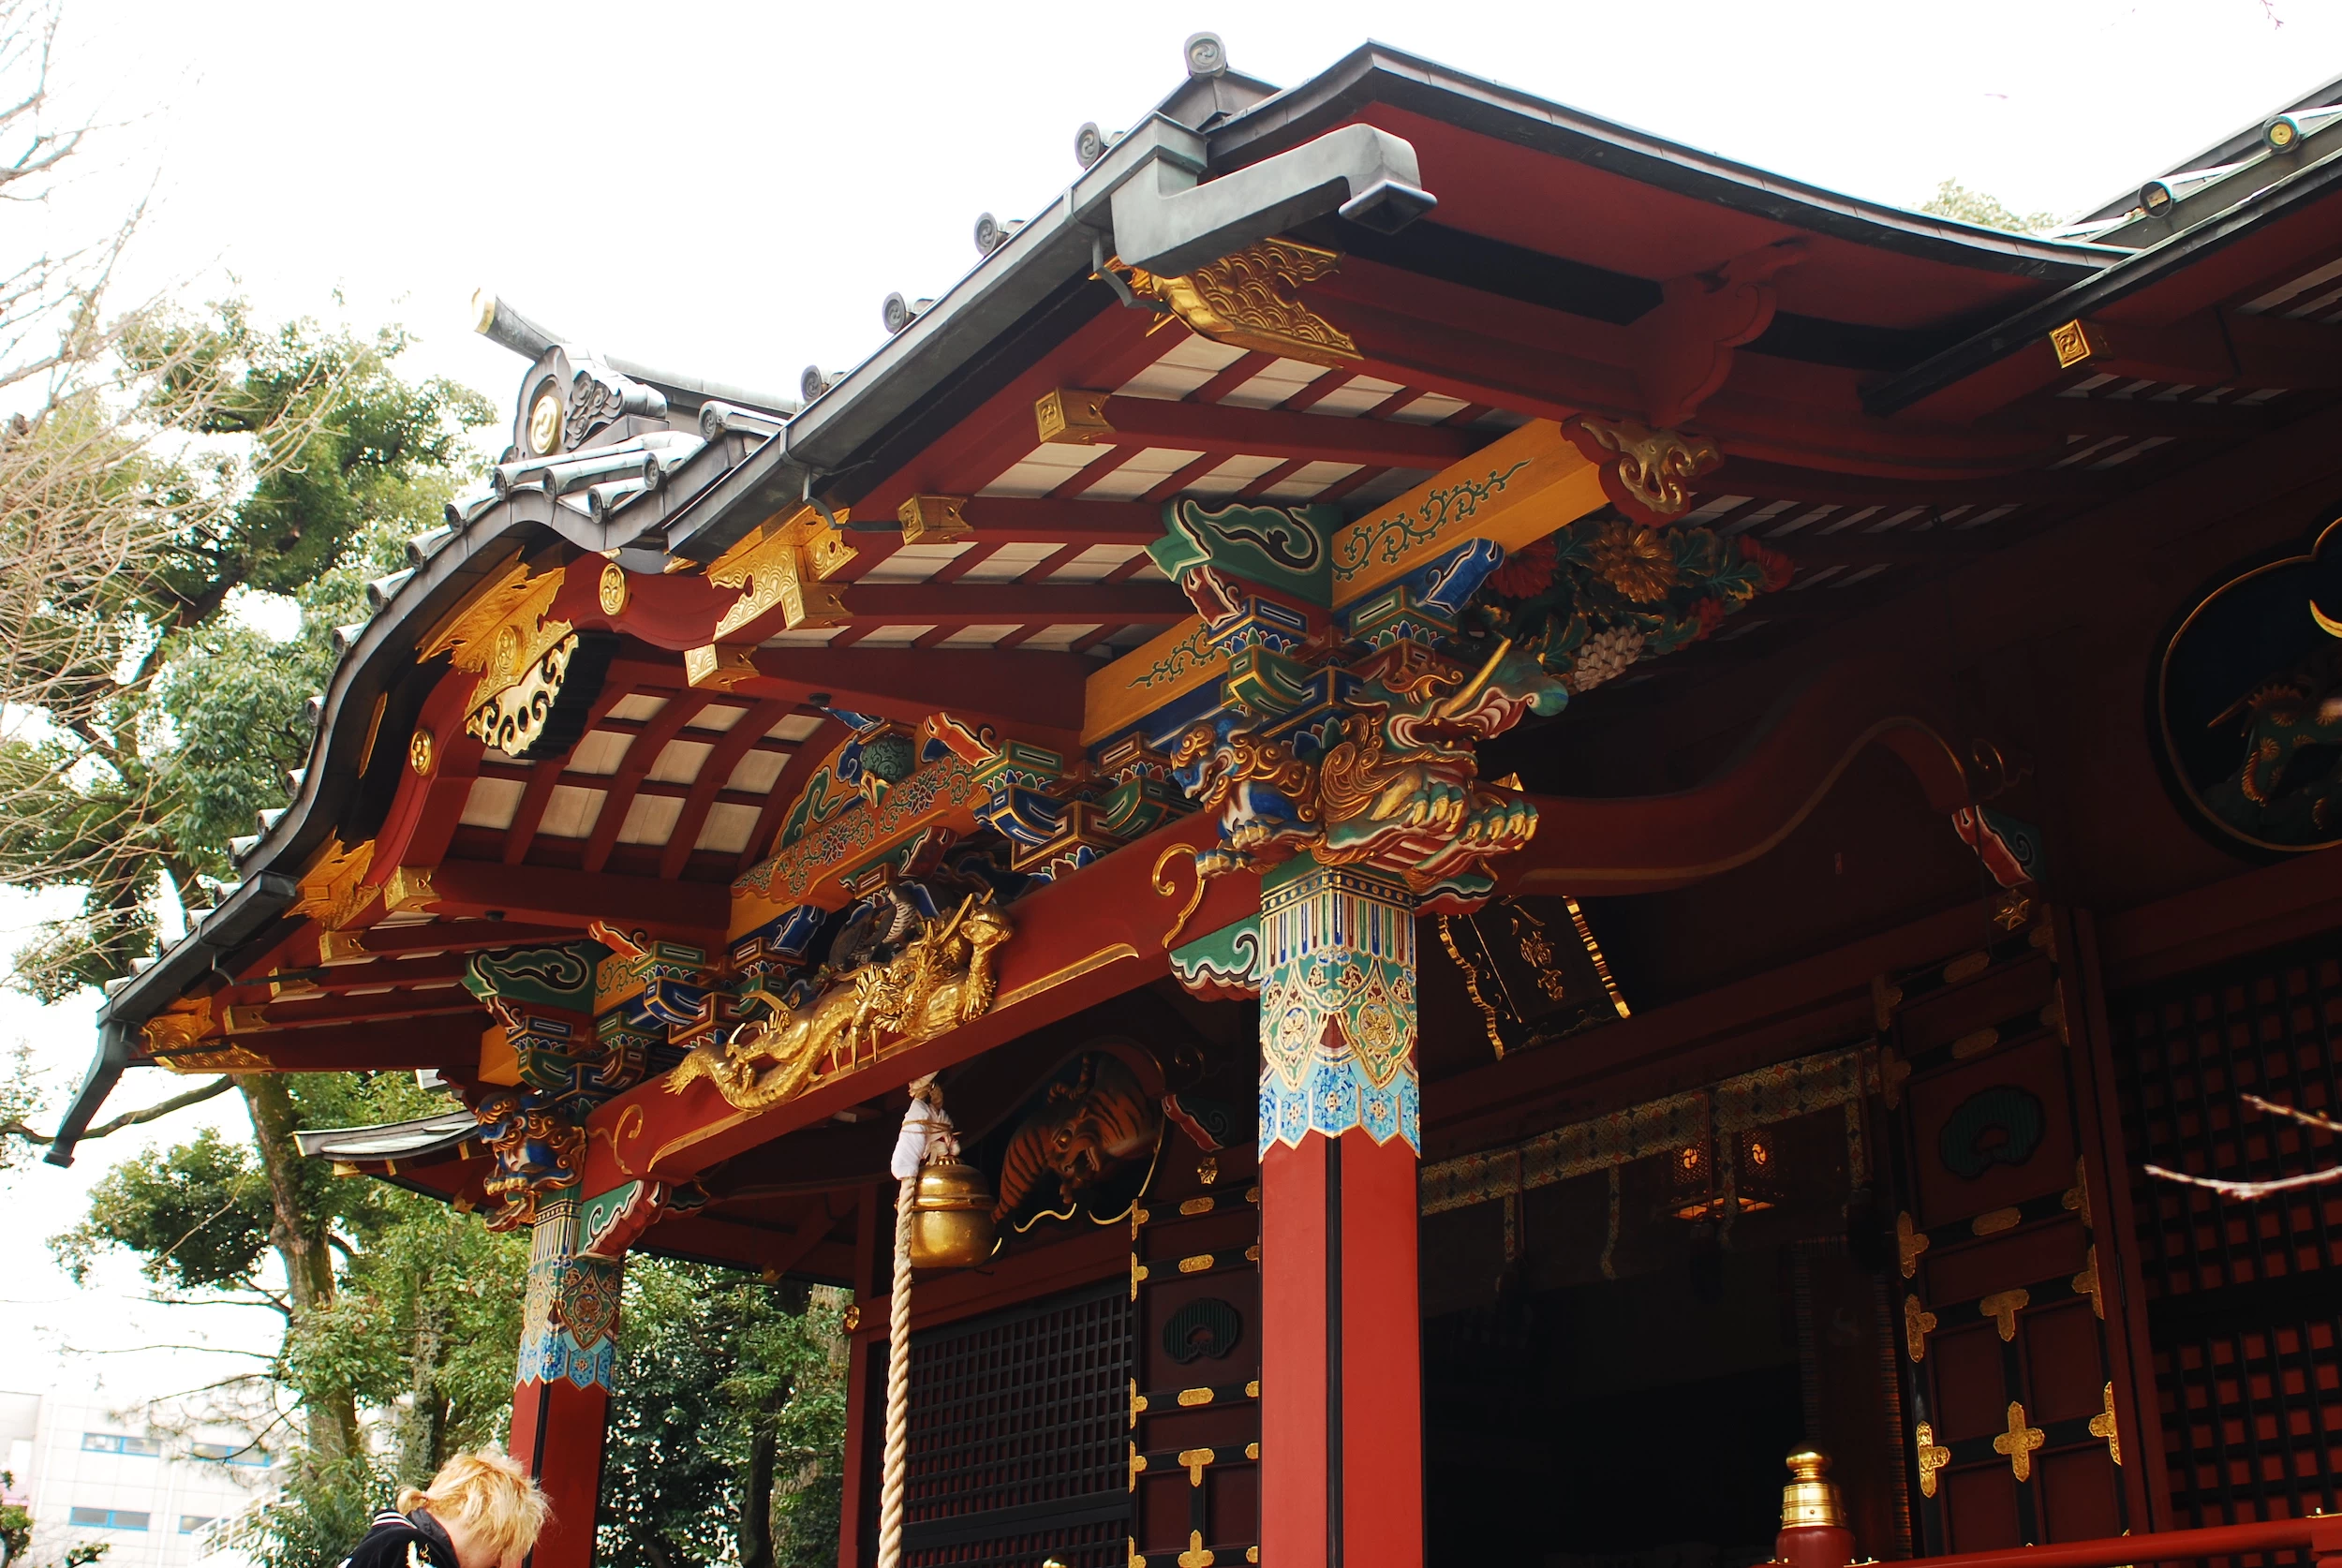 江戸時代初期の建築様式の御社殿